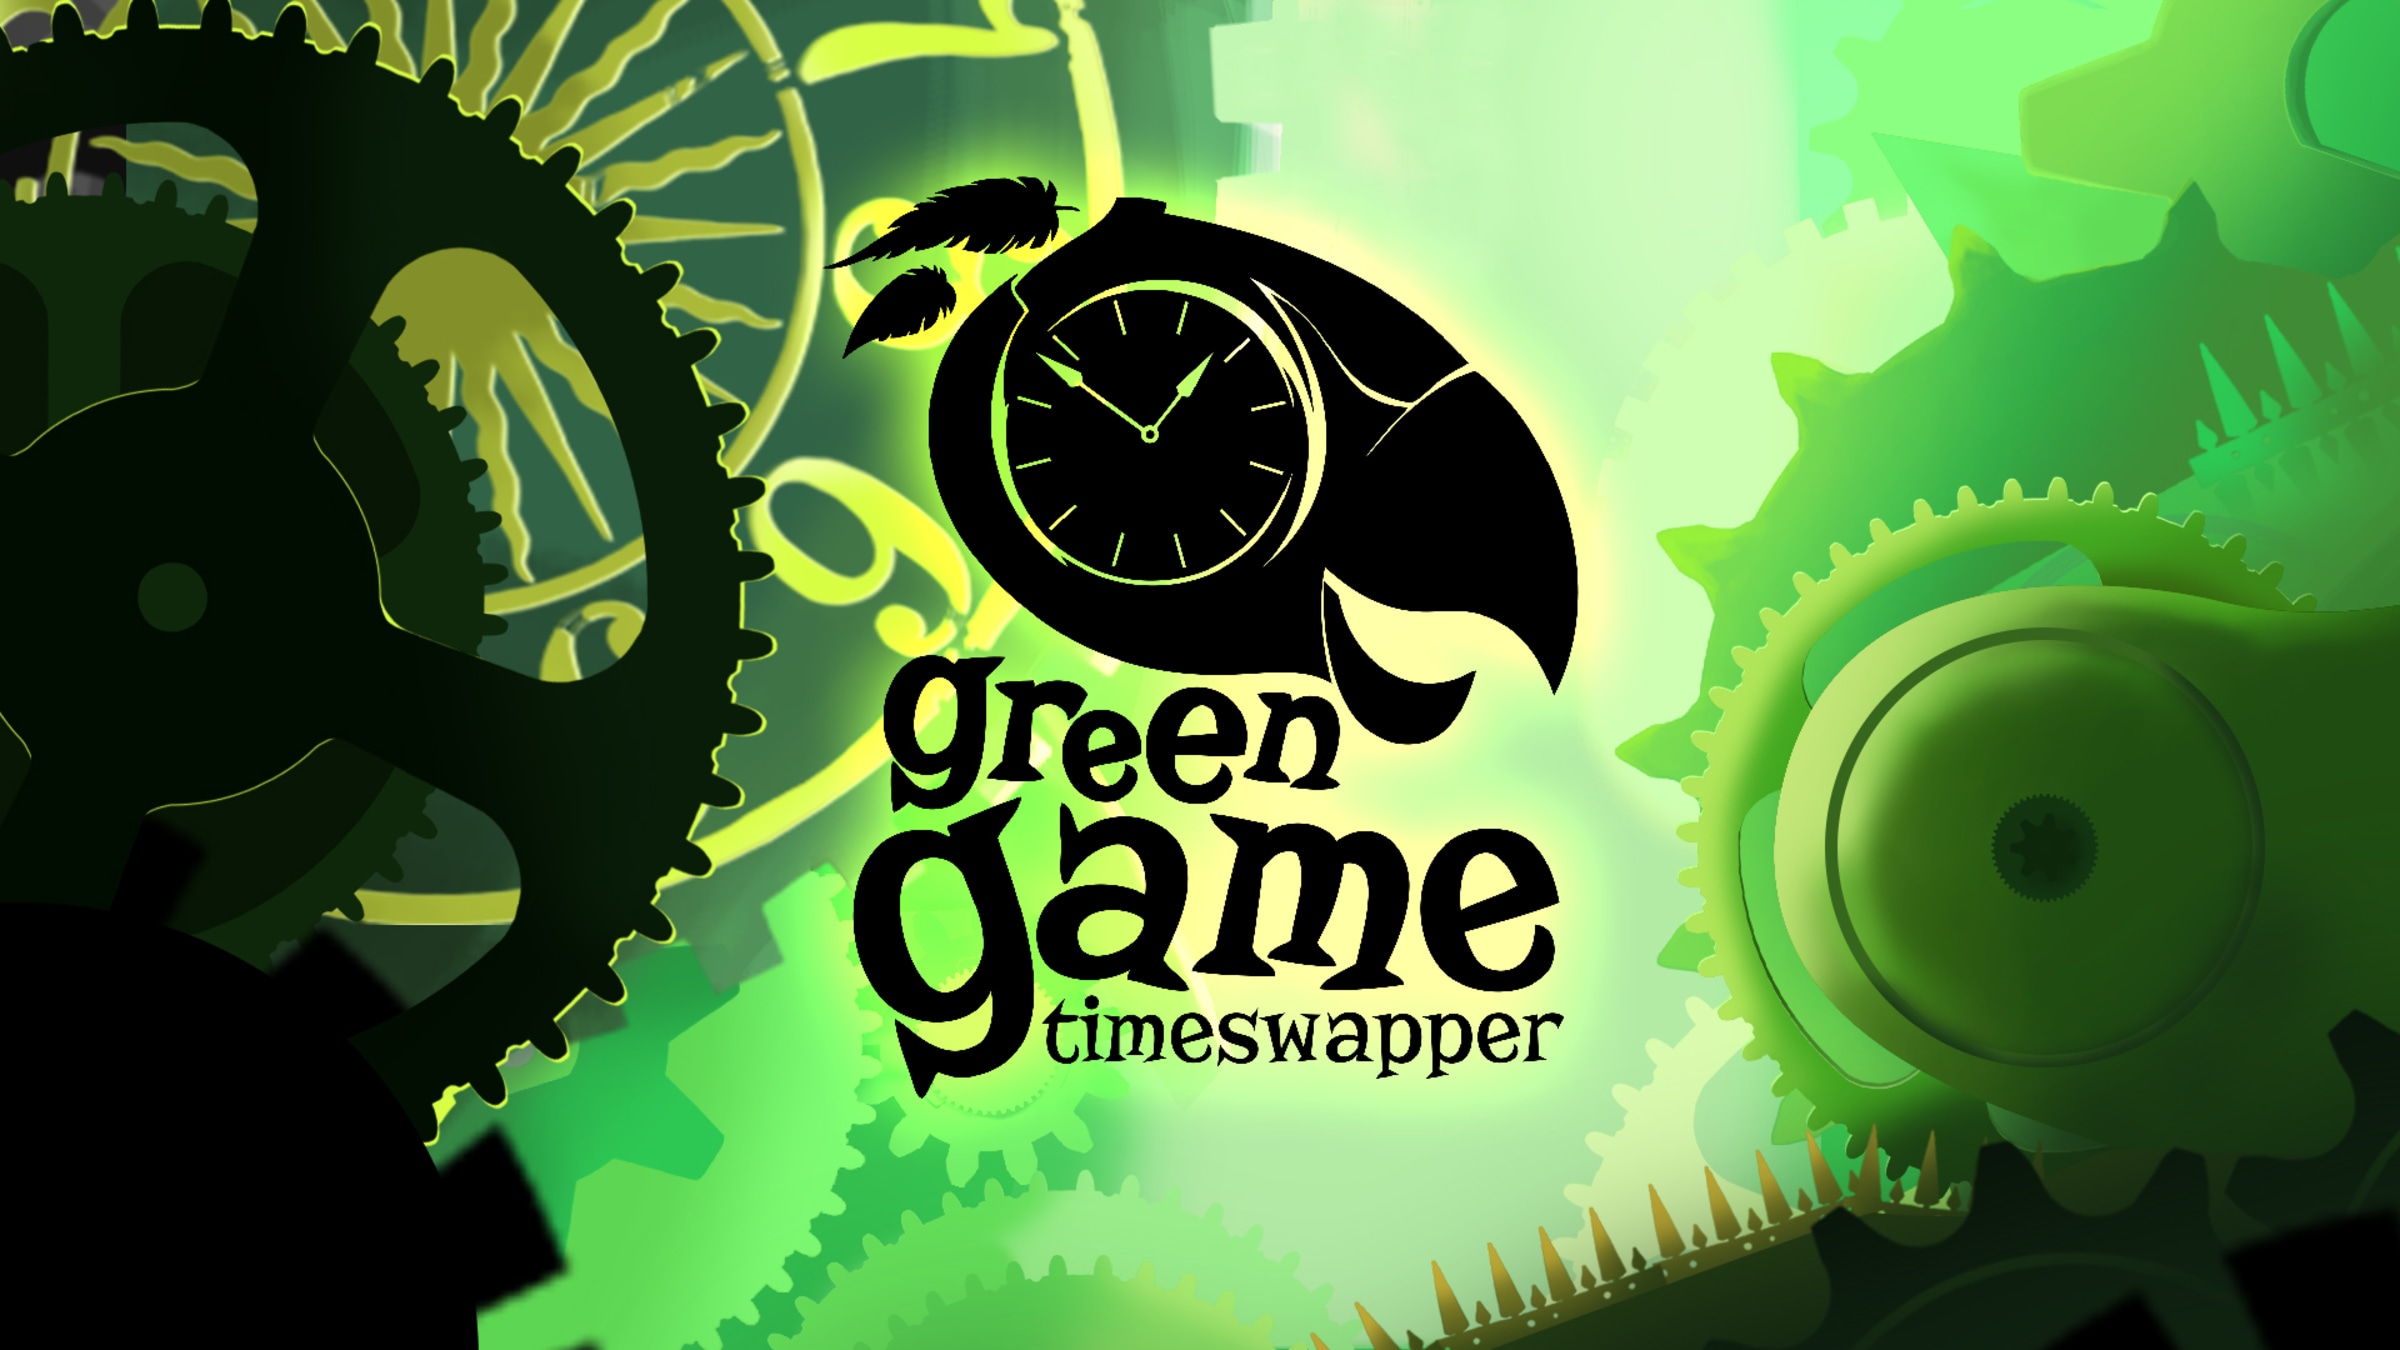 Игры с зеленым цветом. Зеленая игра. Грин гейм. Green game TIMESWAPPER PS Vita. Greening игра.